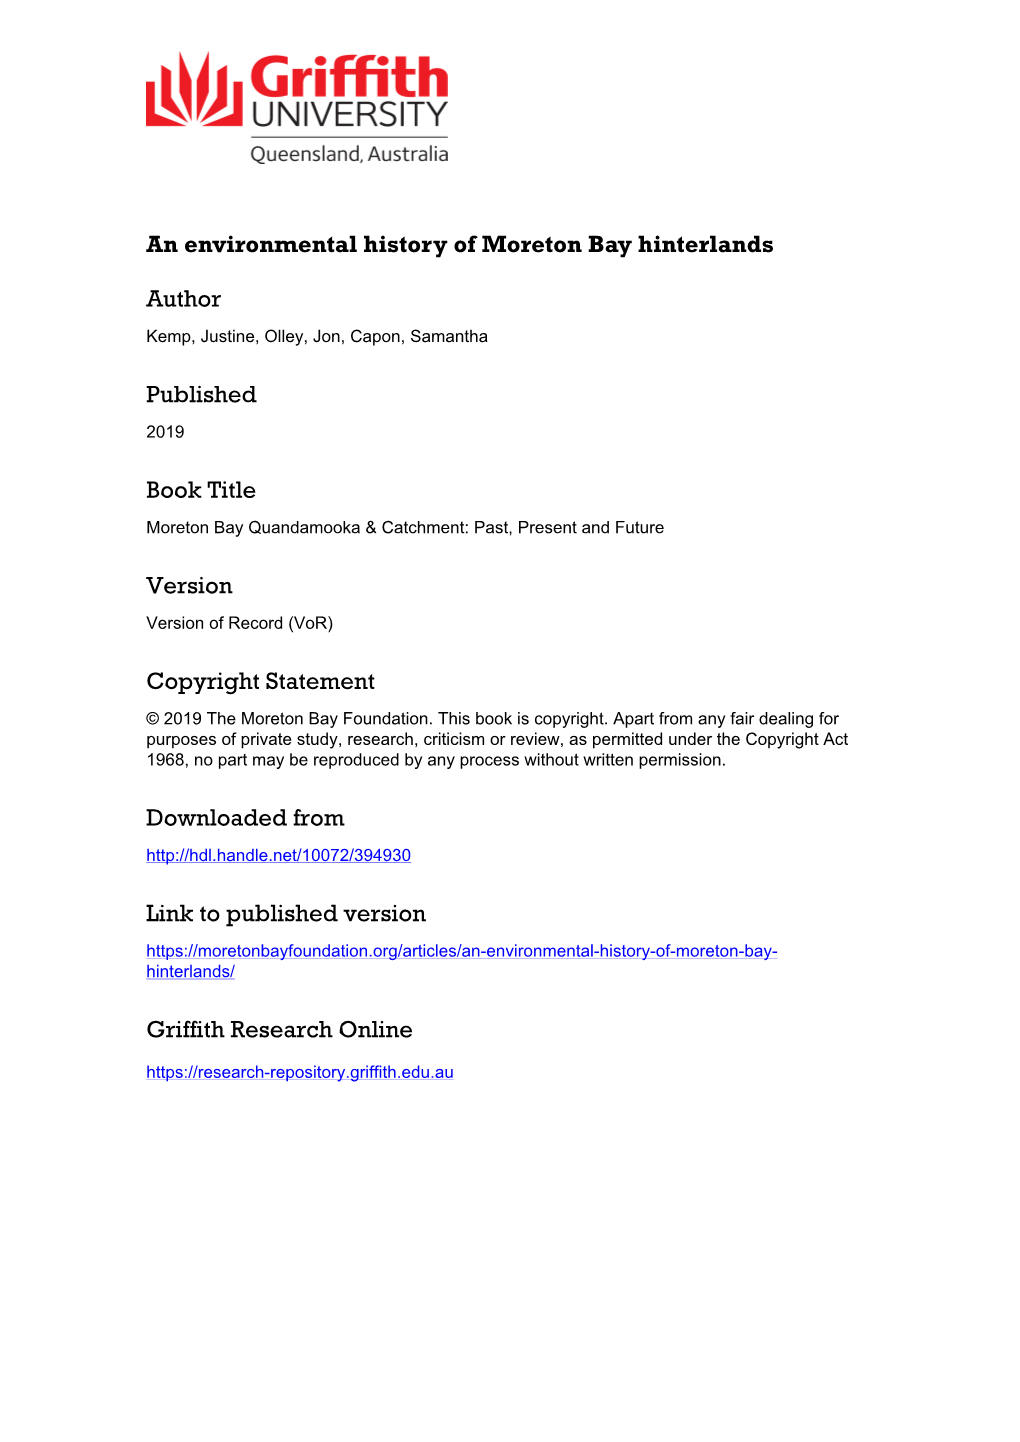 An Environmental History of Moreton Bay Hinterlands